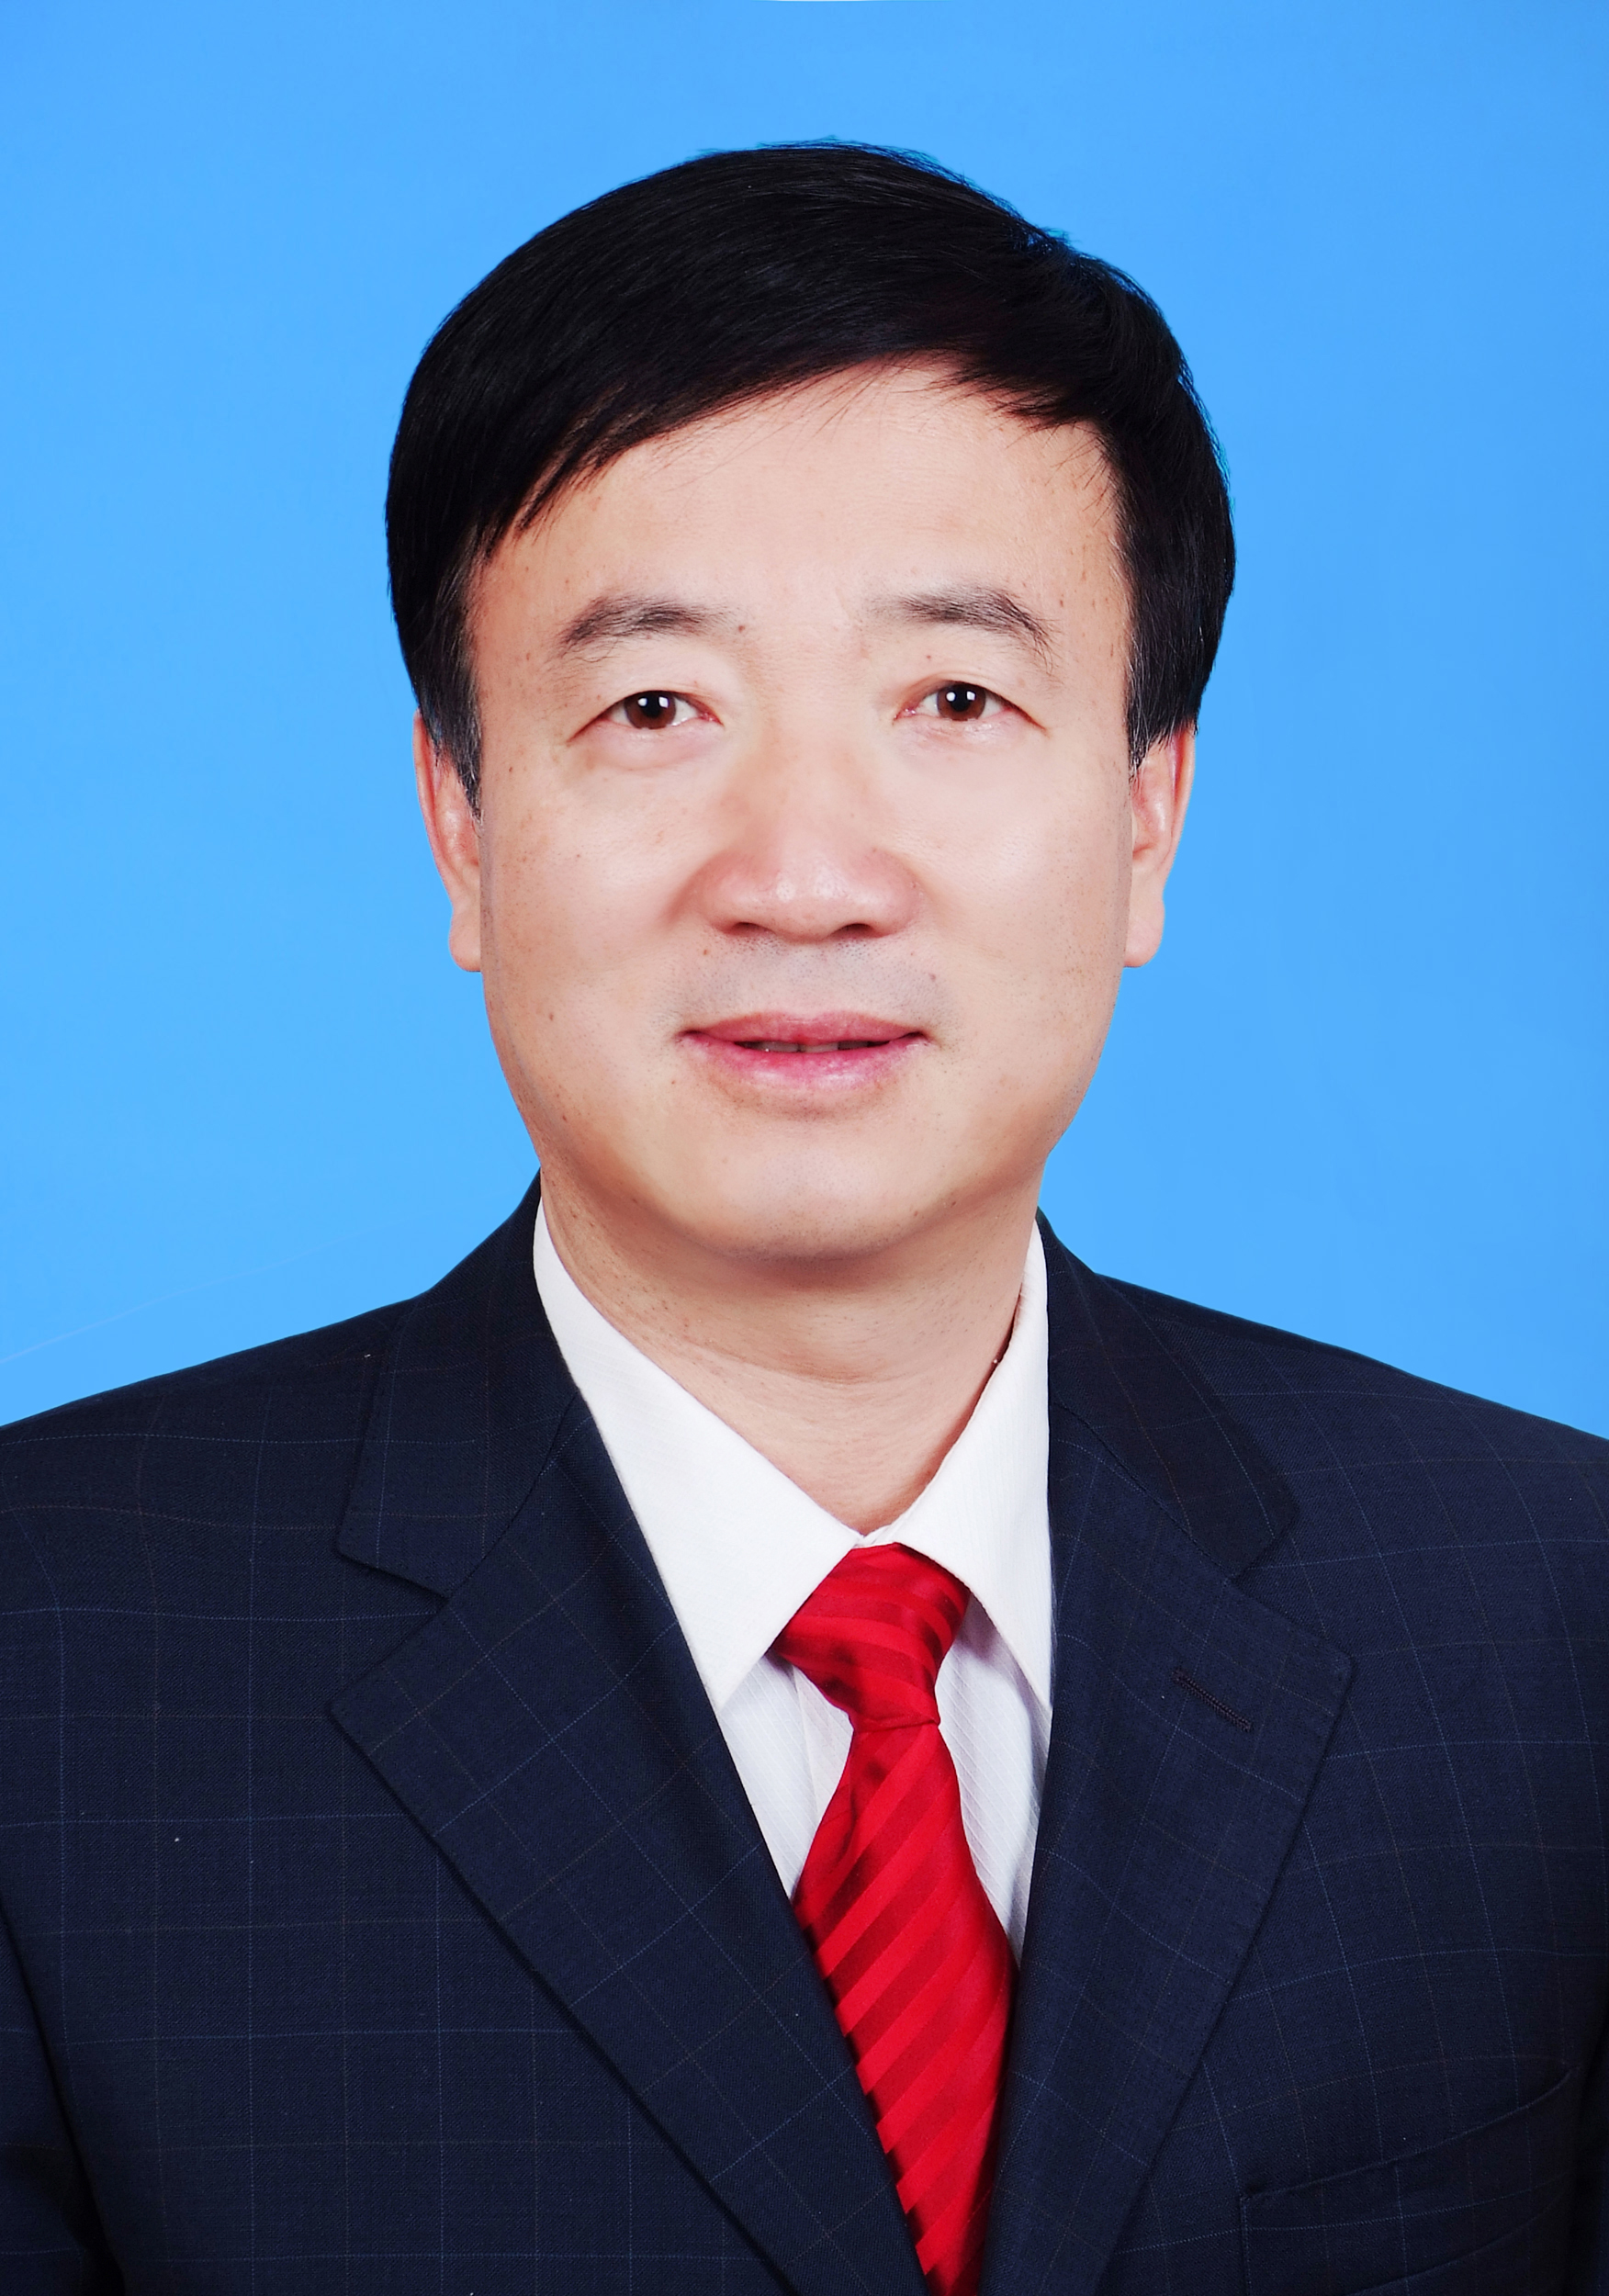 趙永清(寧夏自治區黨委常委、秘書長、宣傳部部長)